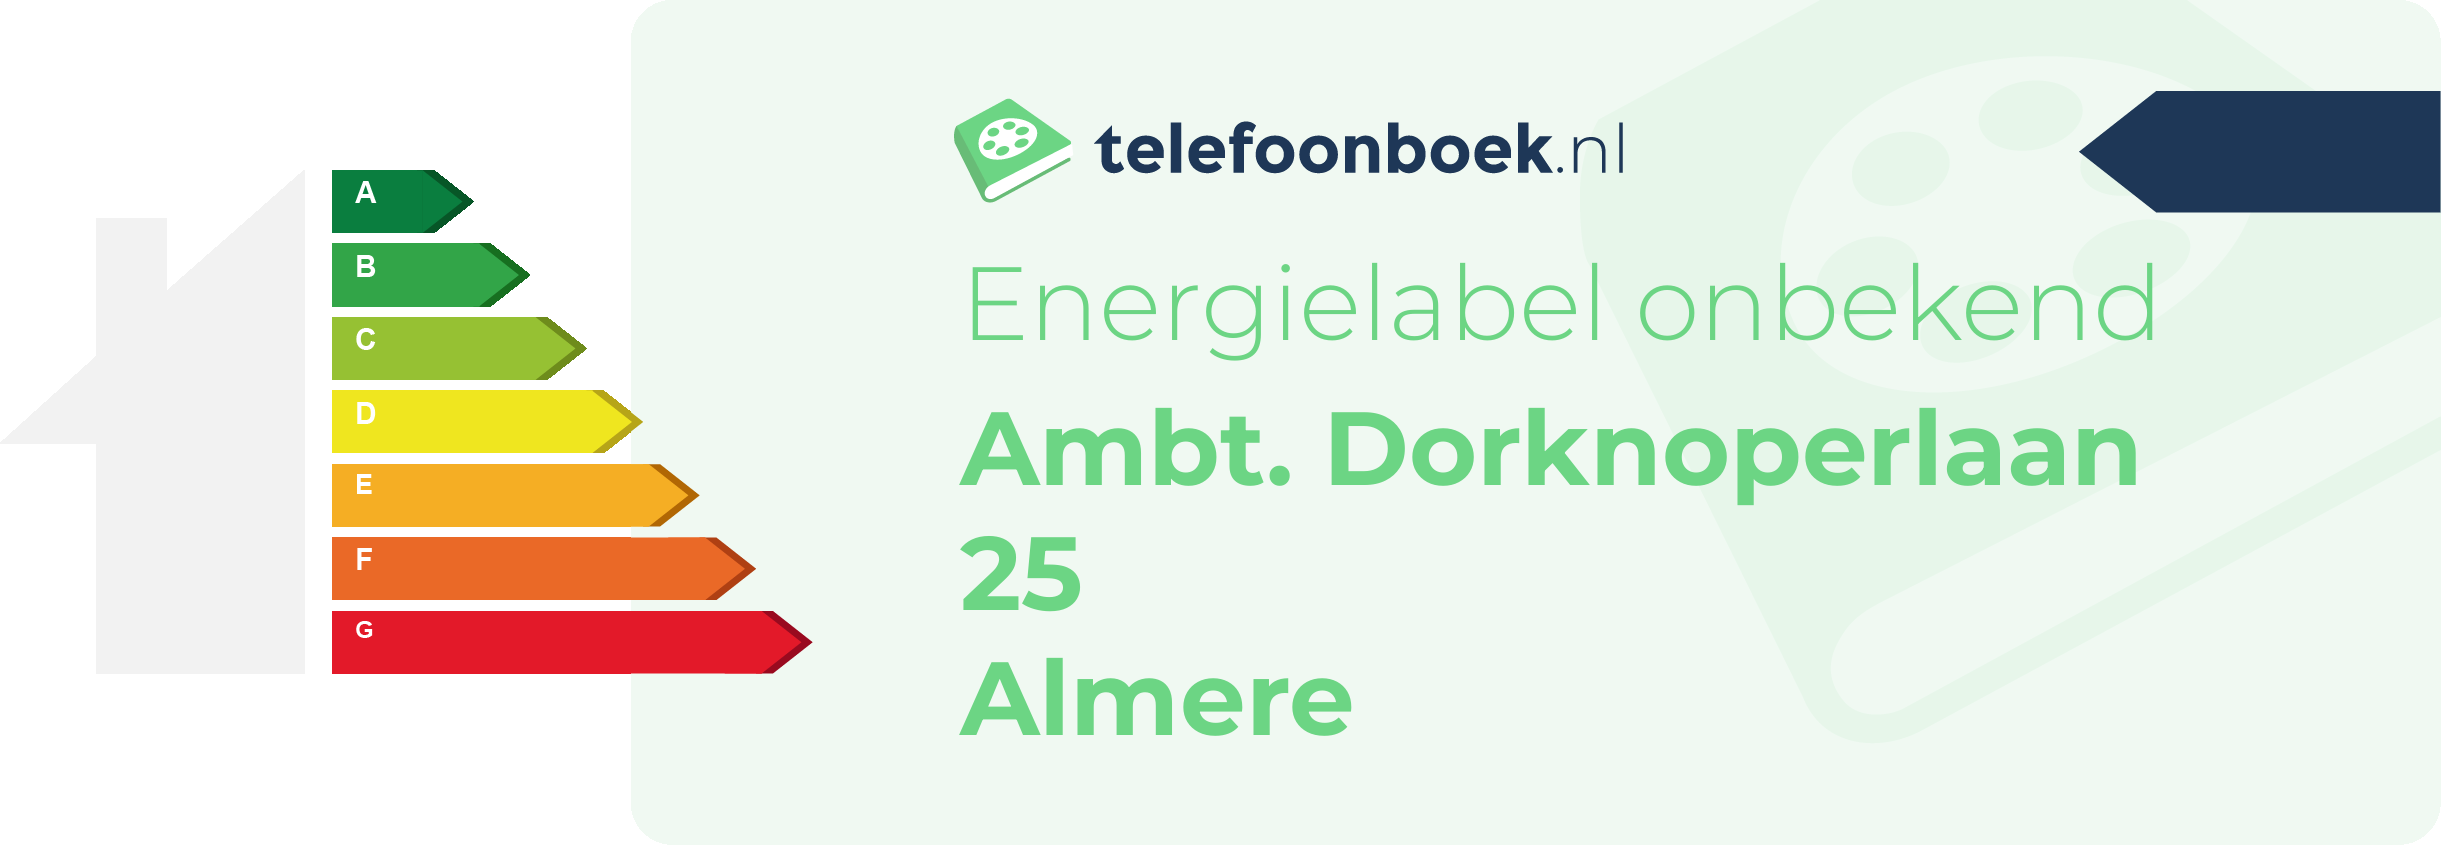 Energielabel Ambt. Dorknoperlaan 25 Almere